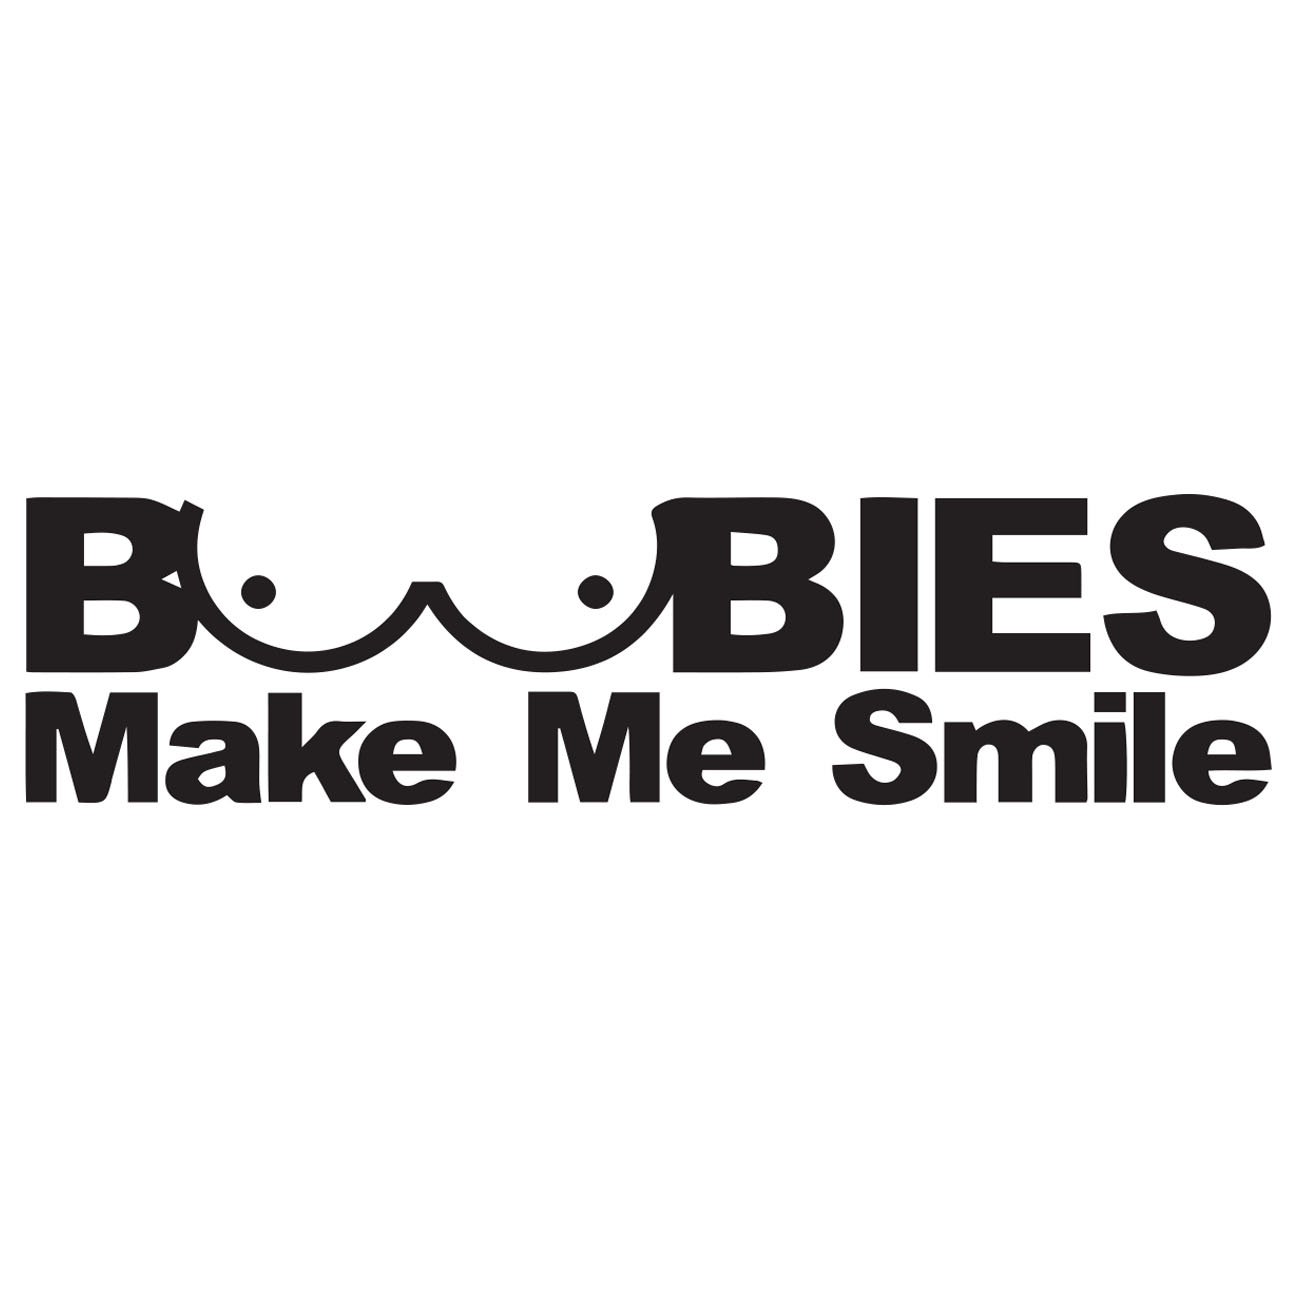 Boobies makes me smile 2